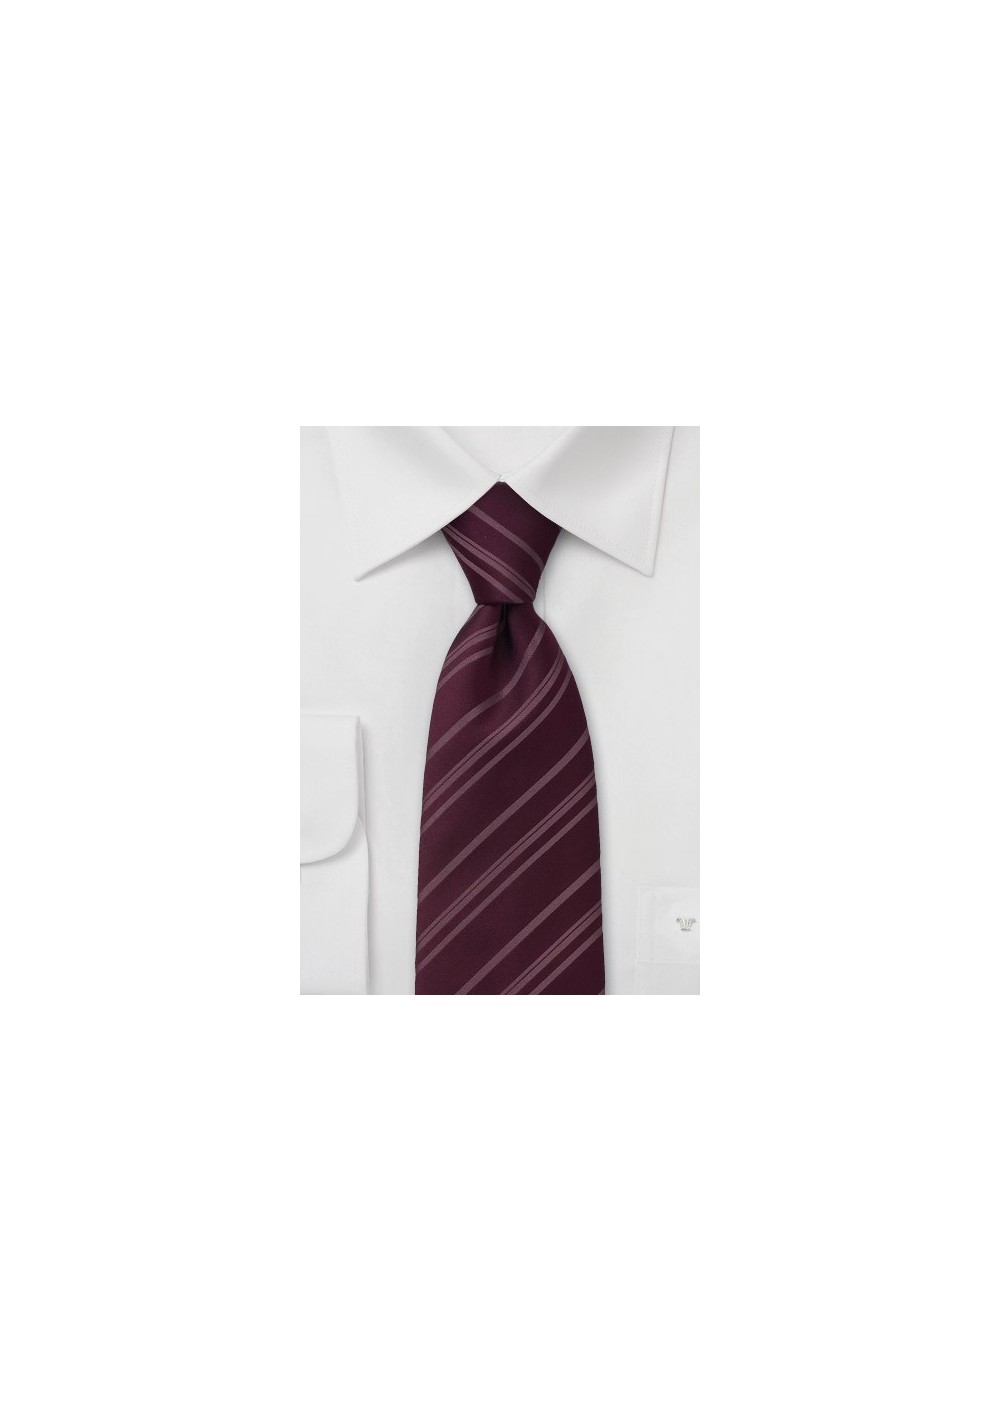 Wine Red Striped Silk Tie in XL